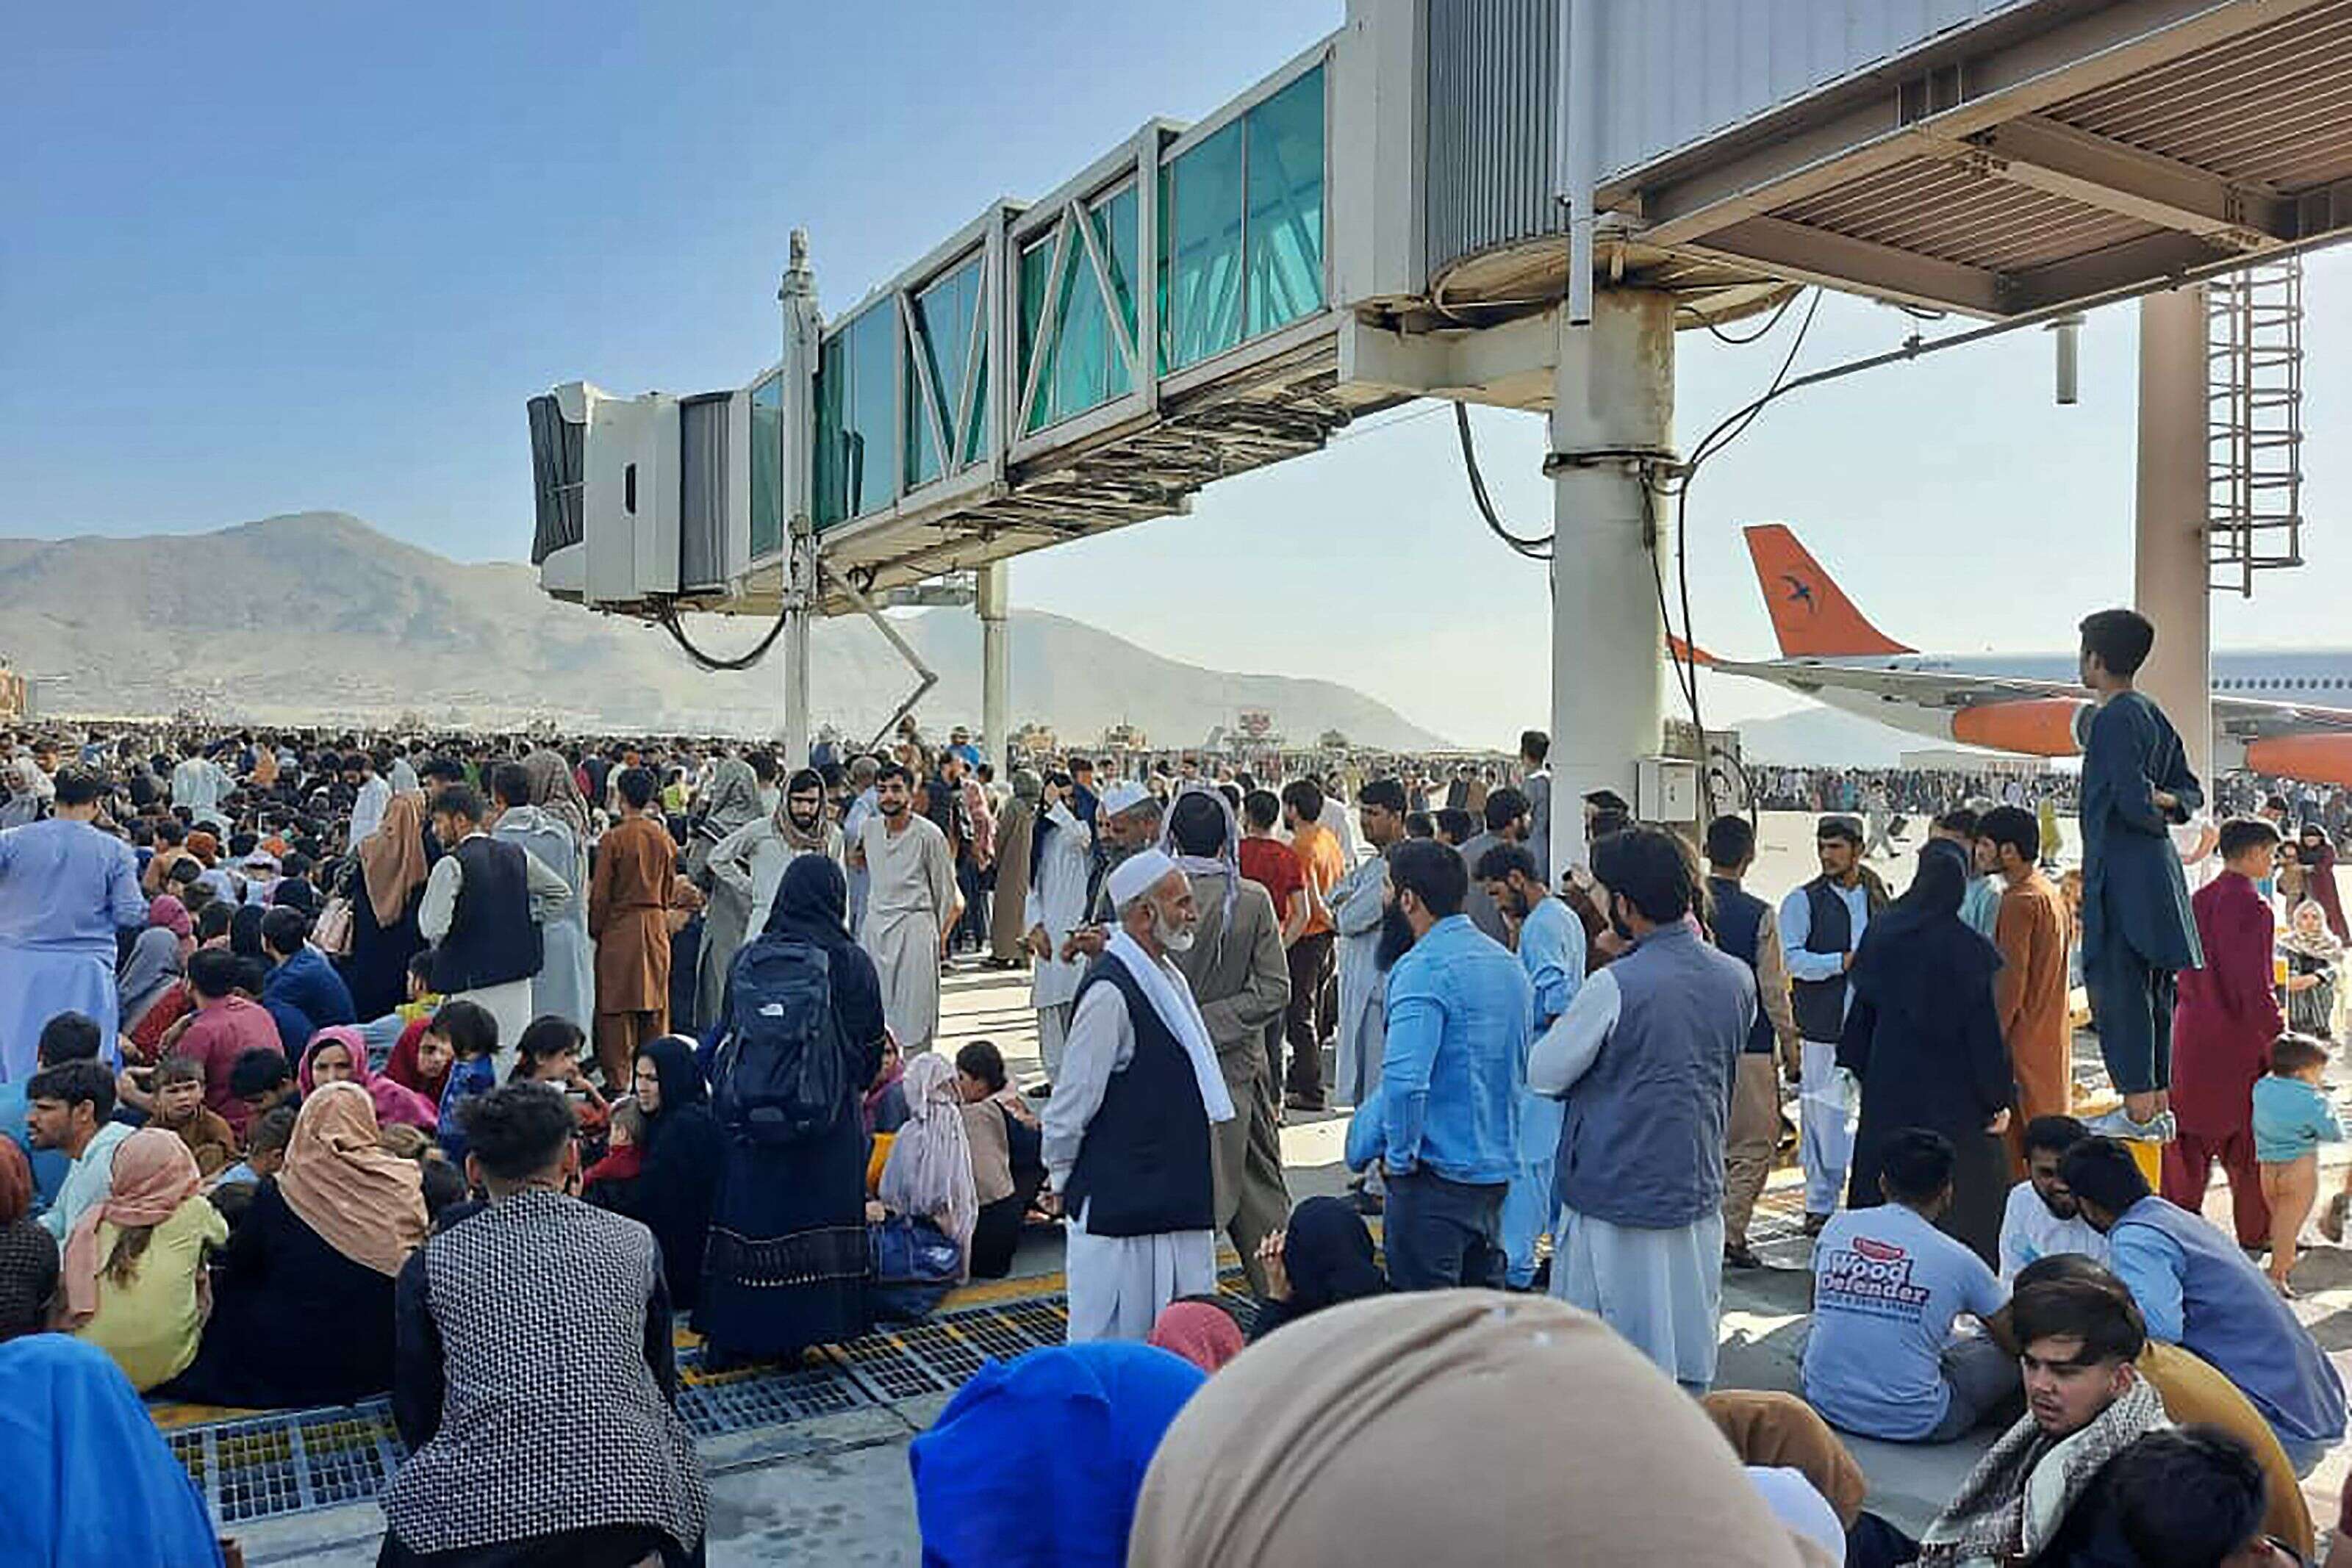 Ce lundi 16 août à l'aéroport de Kaboul, une immense foule de civils espérait pouvoir embarquer un vol international pour quitter au plus vite l'Afghanistan après la prise de pouvoir des talibans.